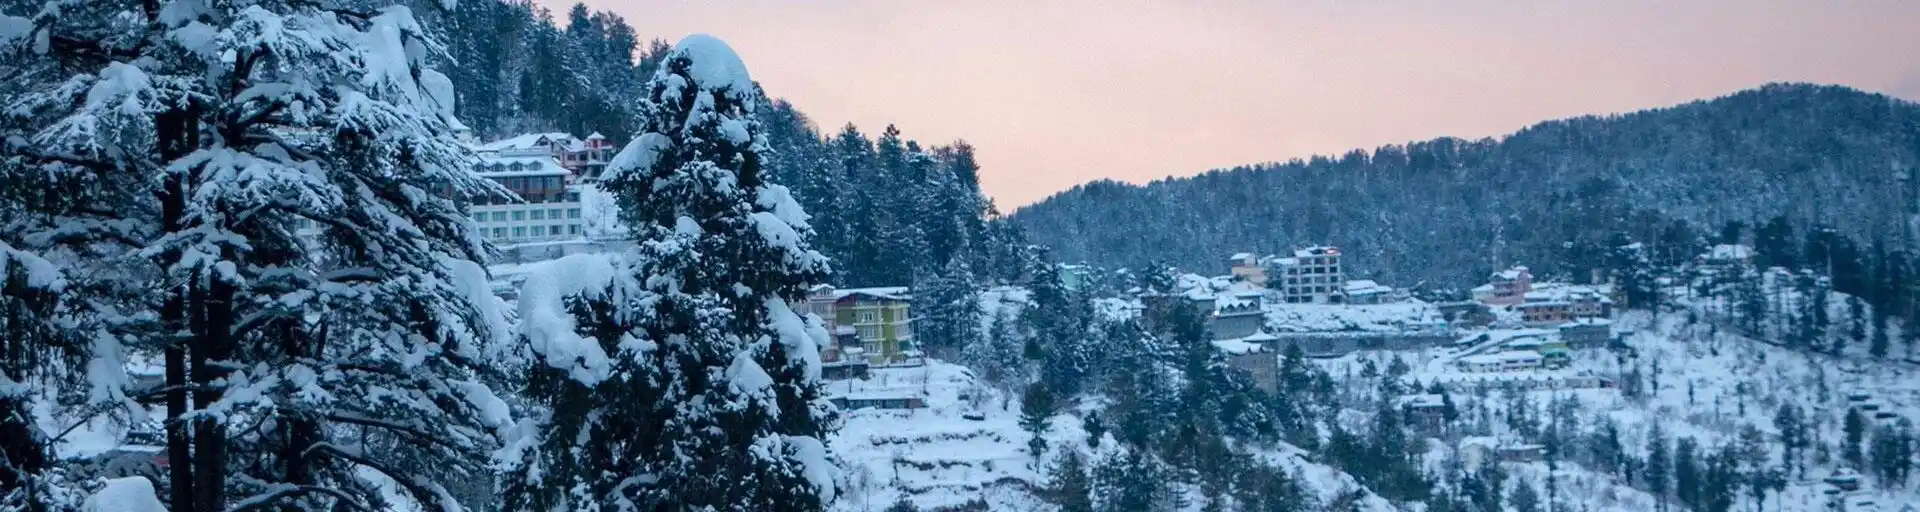 Shimla Snowfall